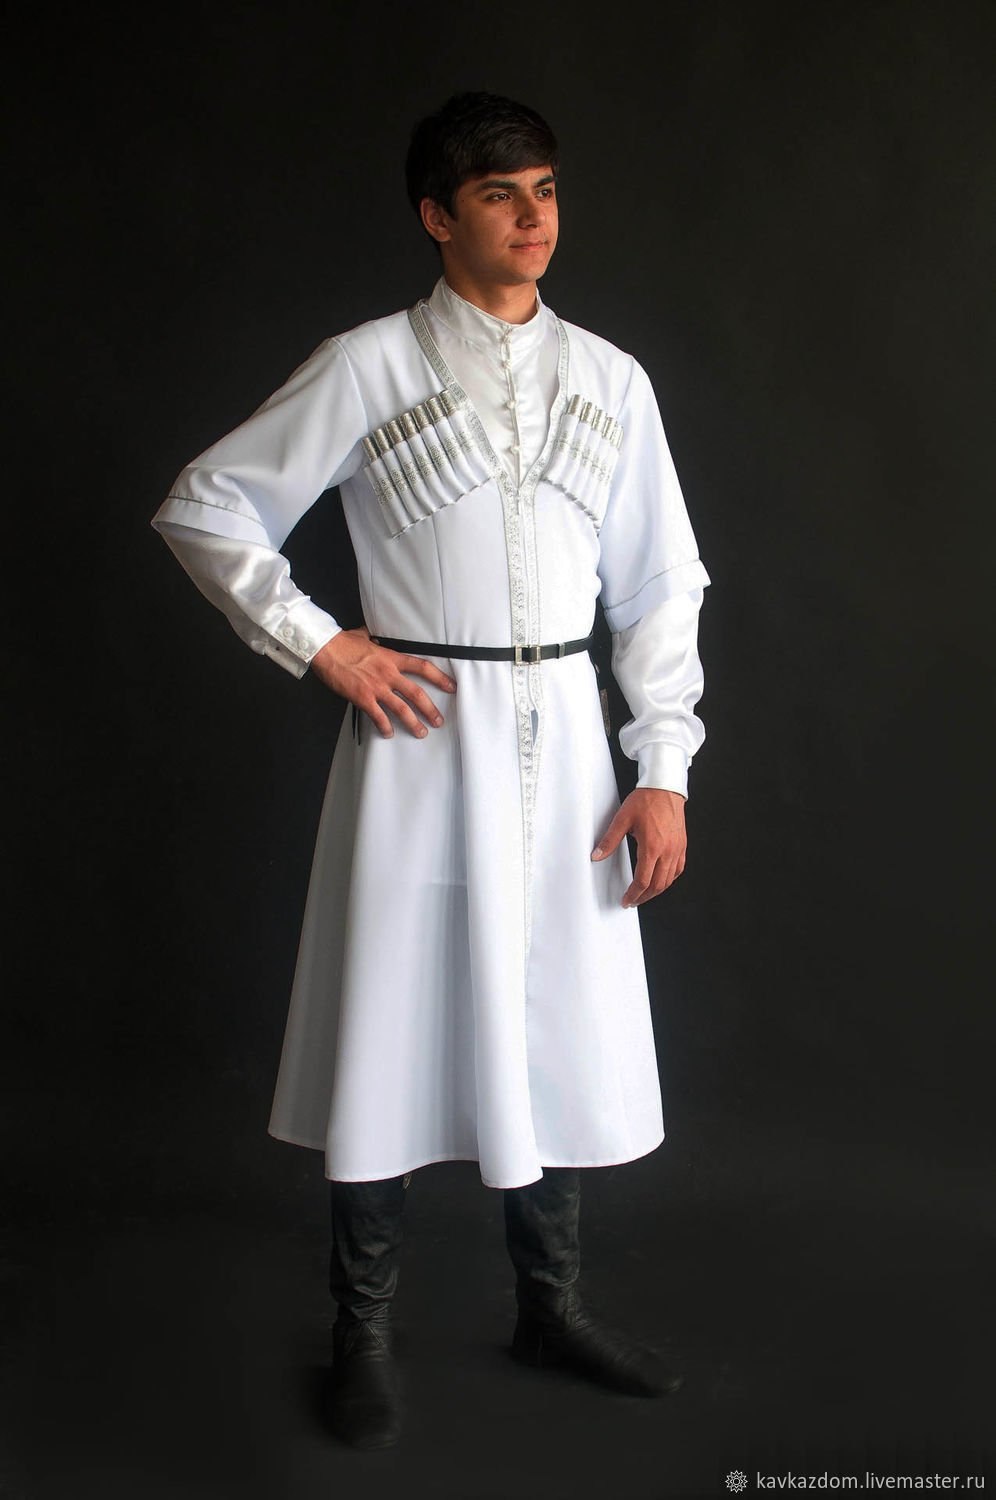 Черкесск мужчина. Грузинский национальный костюм мужской Чоха. Бурка черкеска. Чоха Грузинская Национальная одежда. Чоха Грузинская Национальная одежда женская.